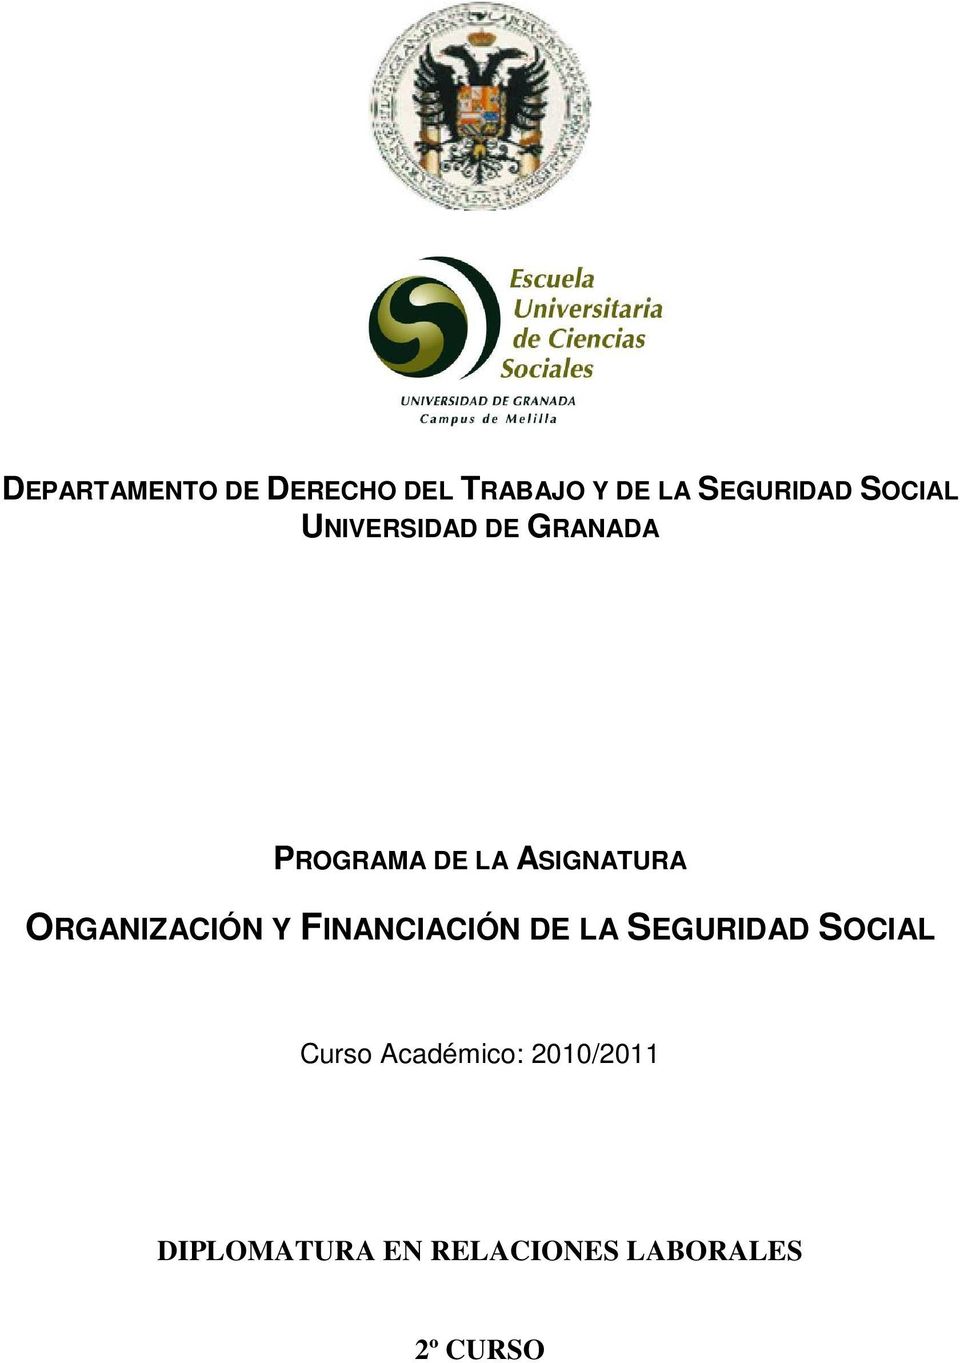 ORGANIZACIÓN Y FINANCIACIÓN DE LA SEGURIDAD SOCIAL Curso